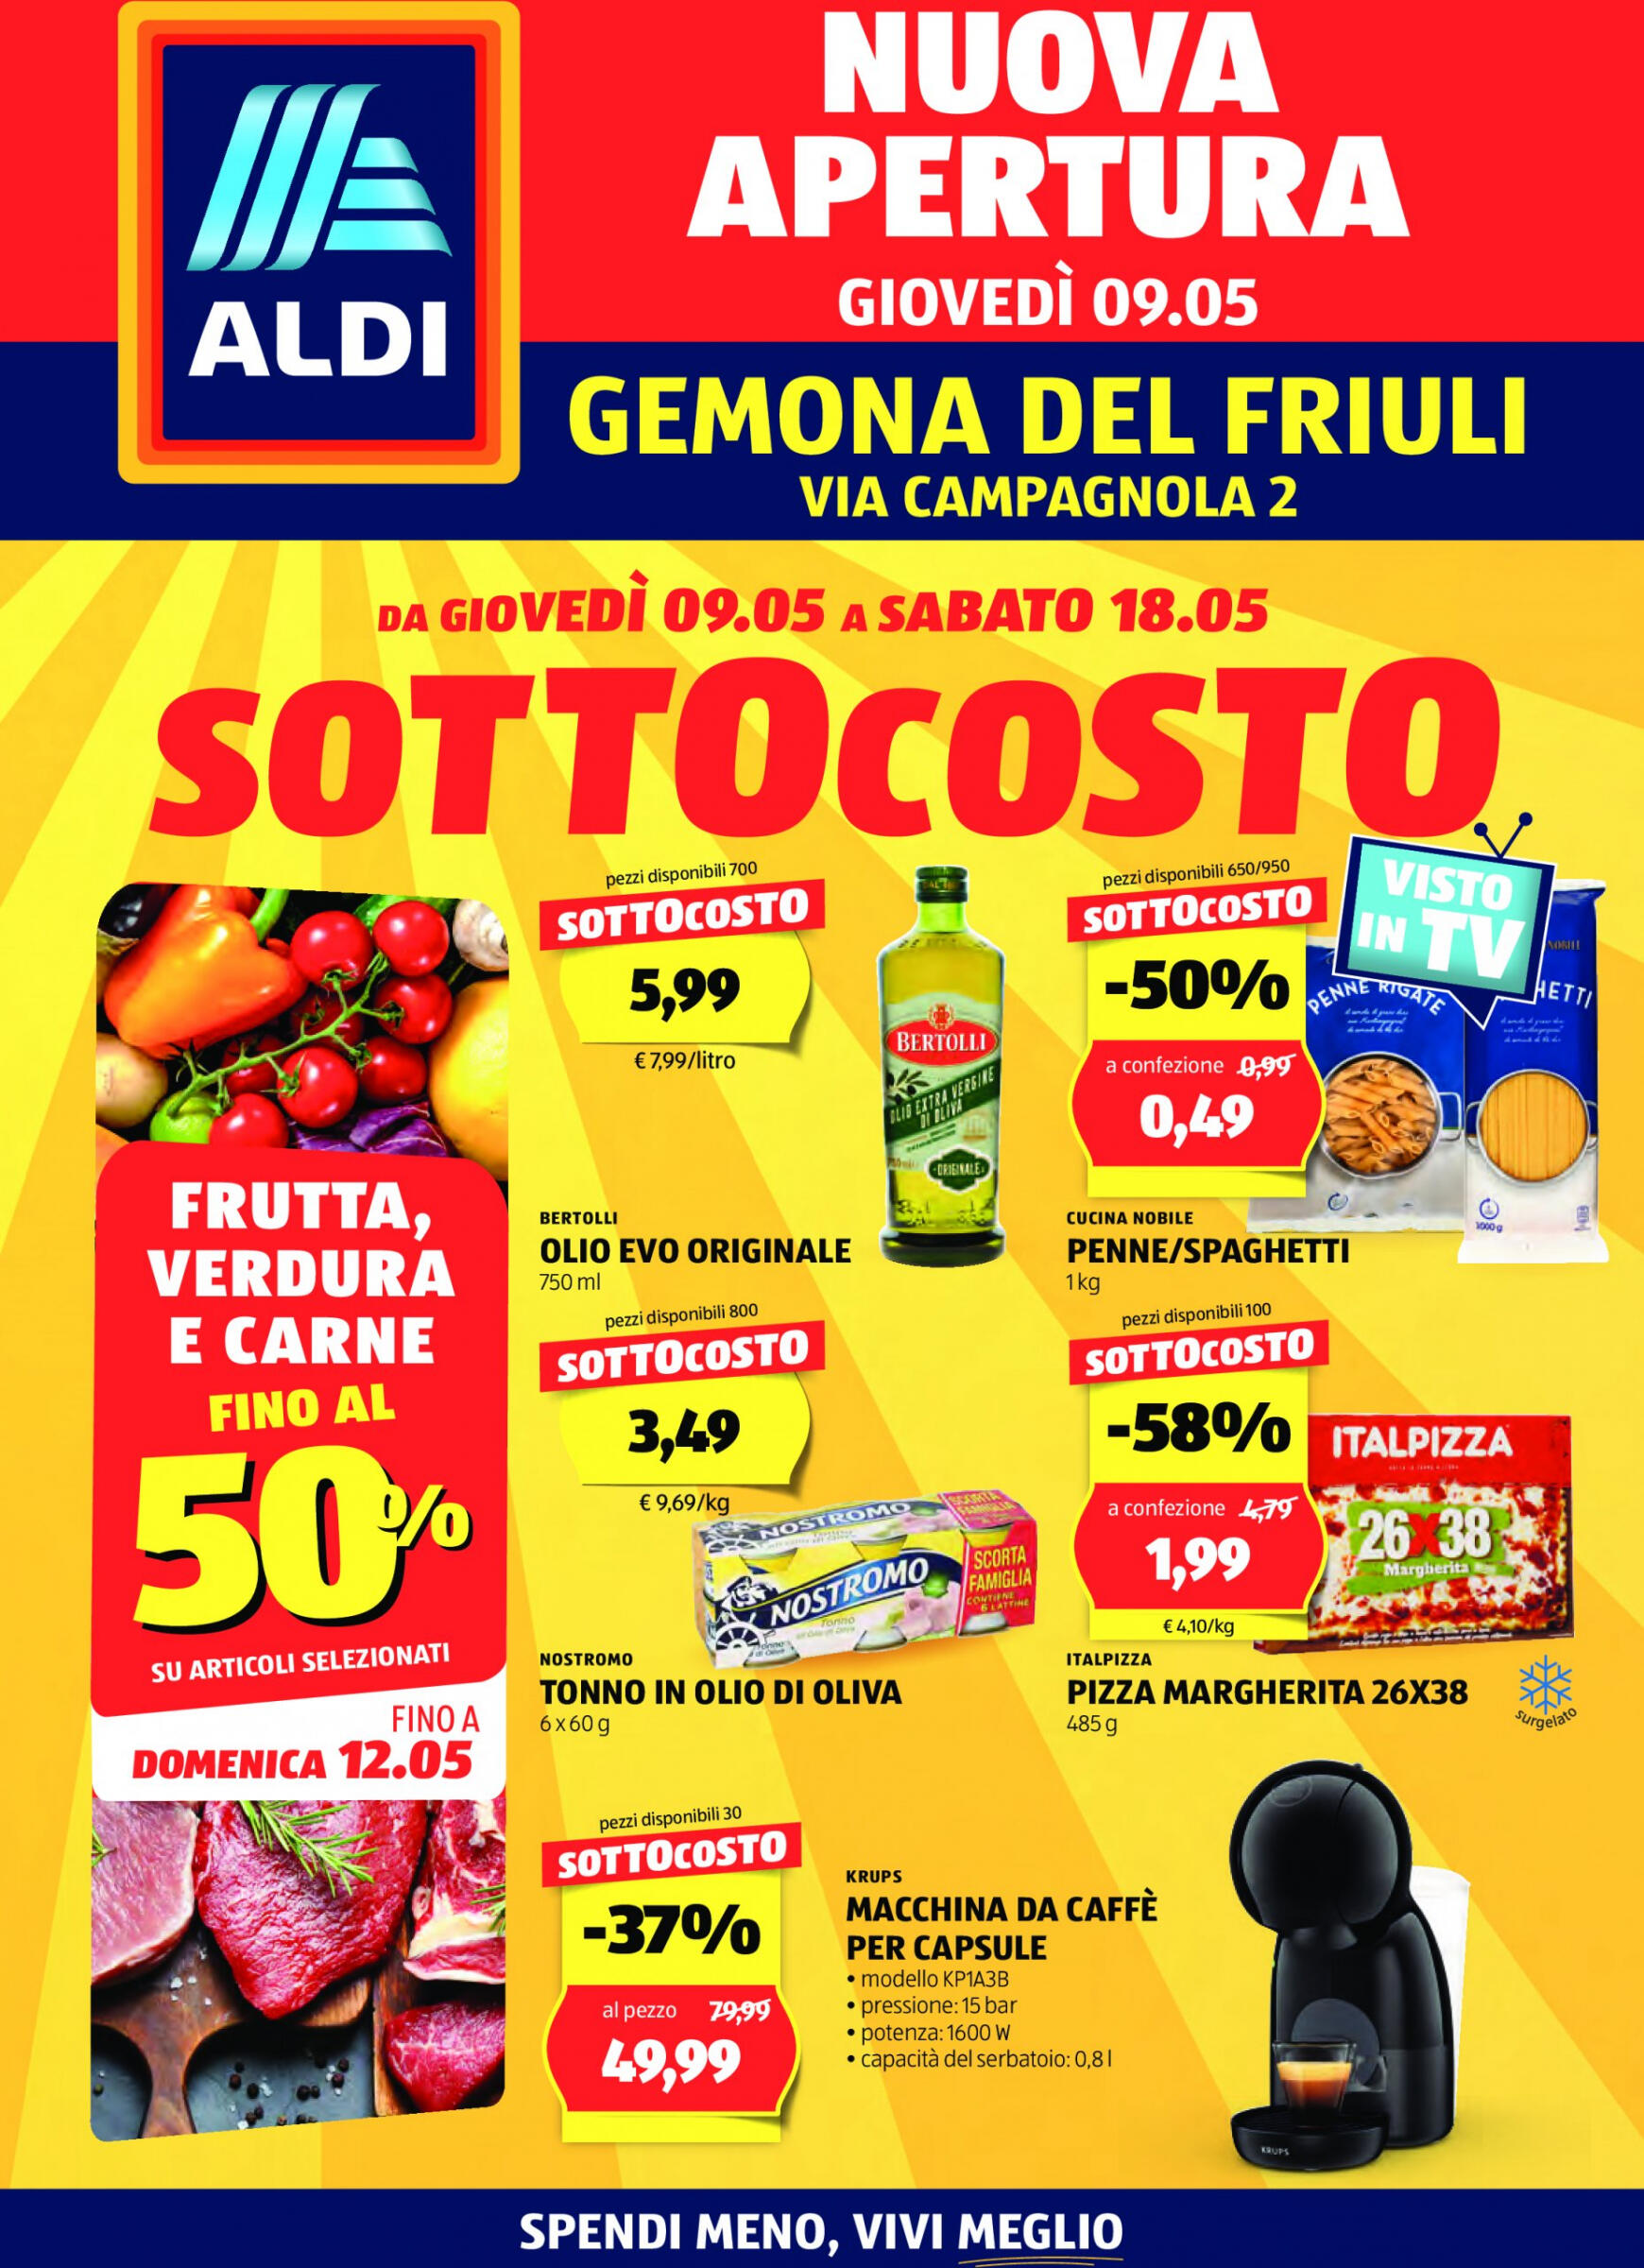 aldi - Nuovo volantino ALDI - Offerte al Prezzo ALDI per l'apertura a Gemona 09.05. - 18.05.